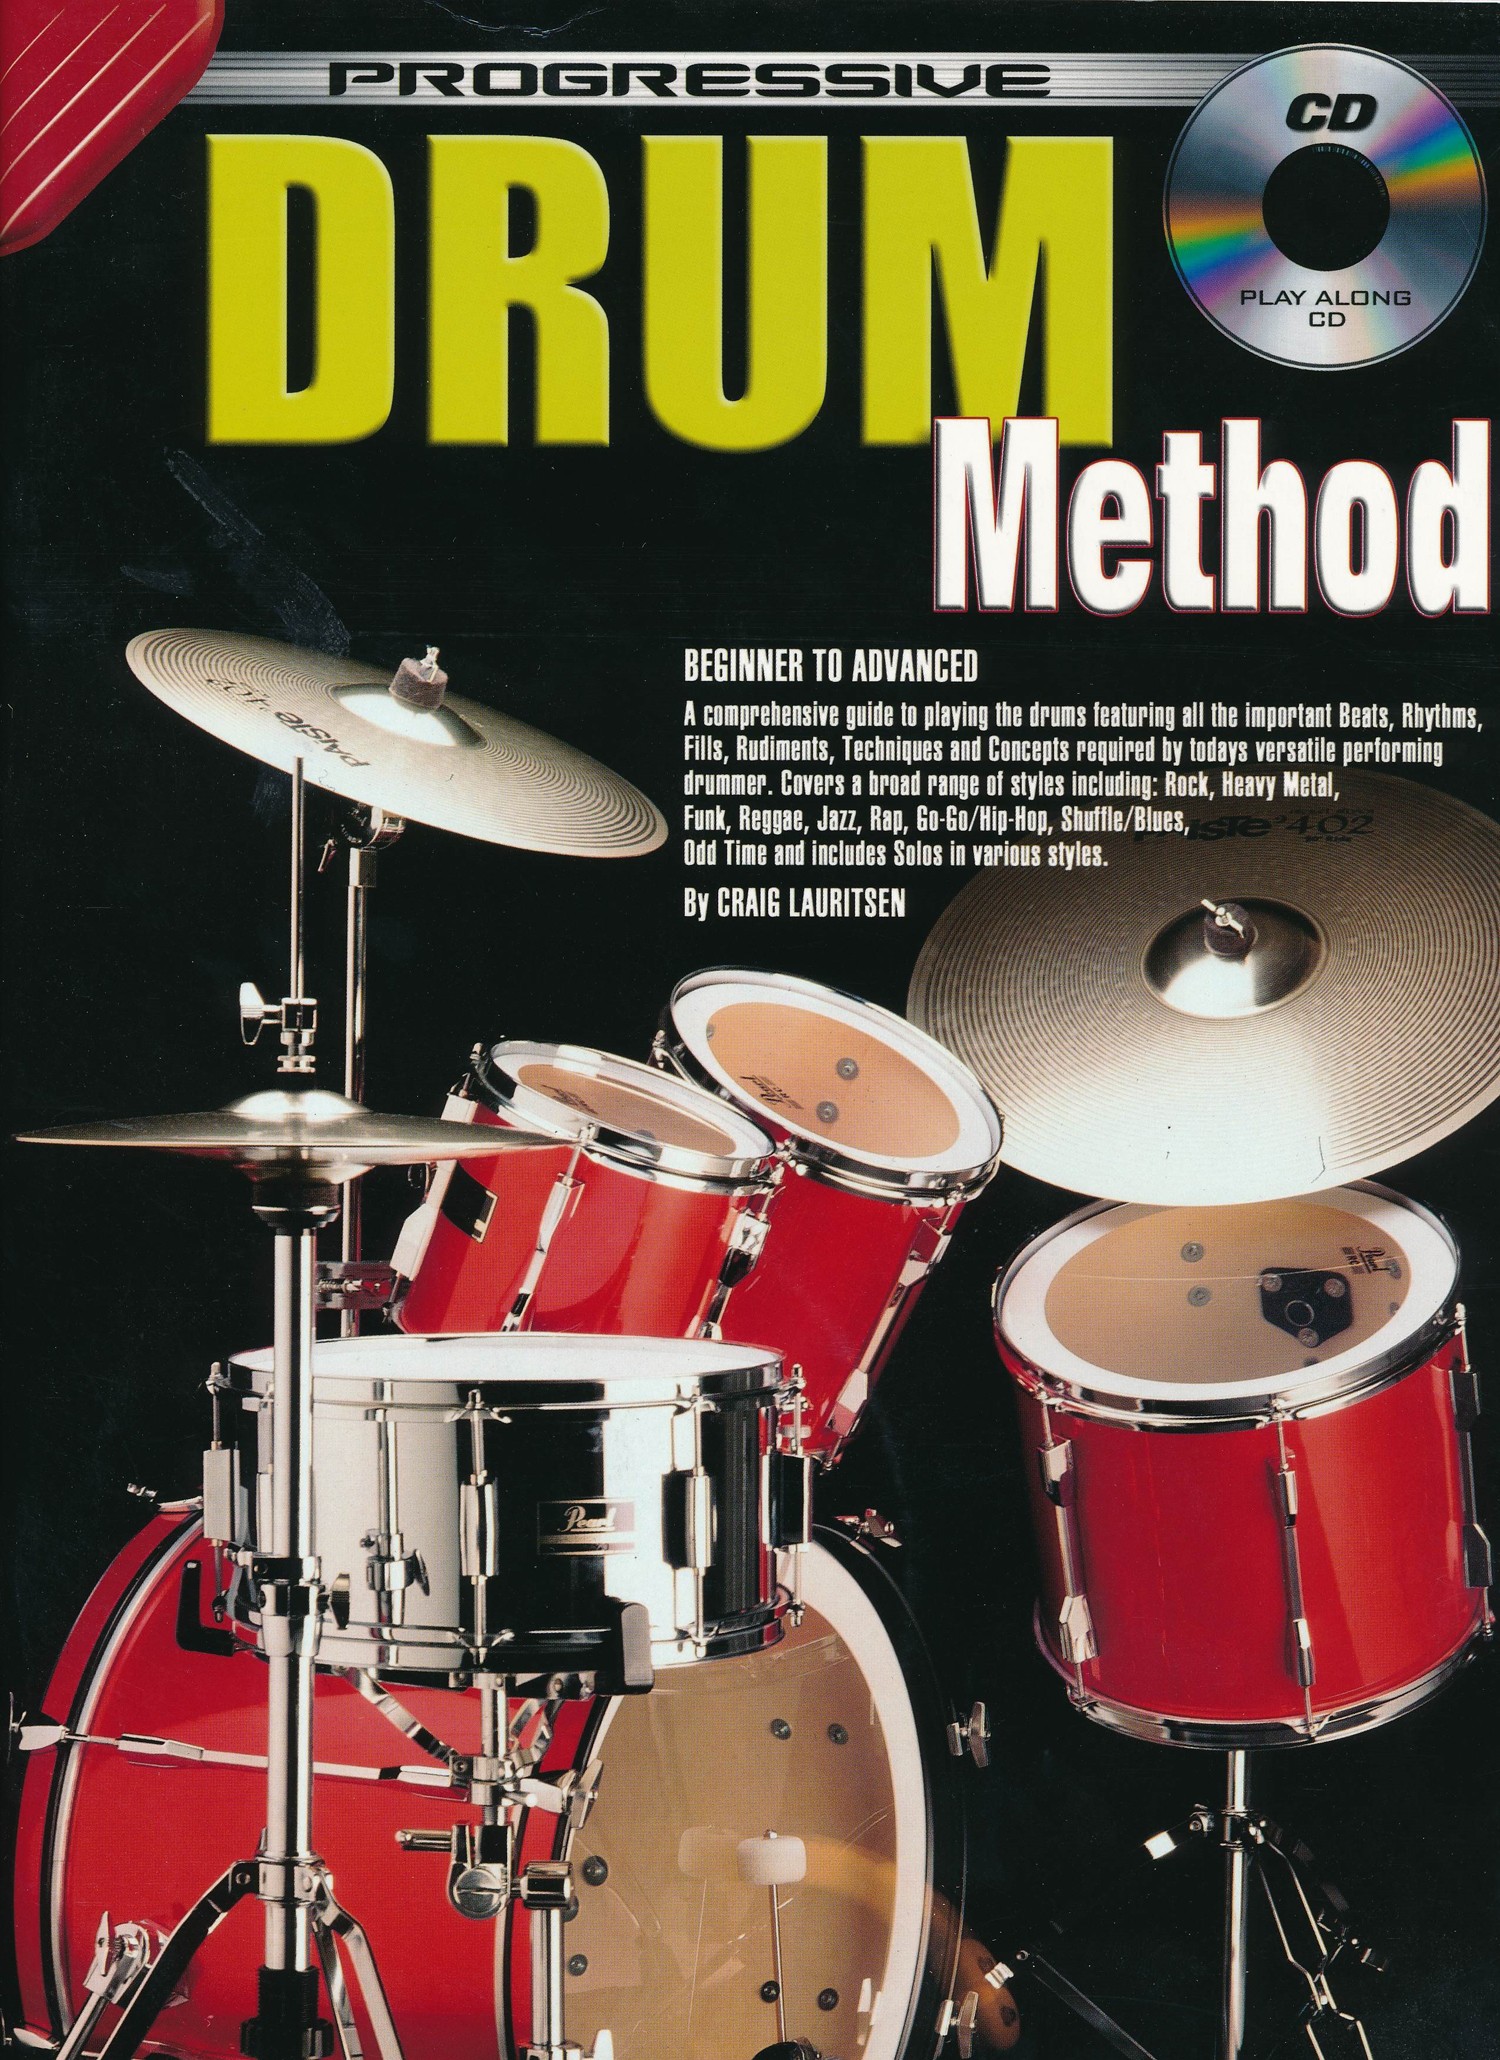 Progressive Drum Method by Craig Lauritsen